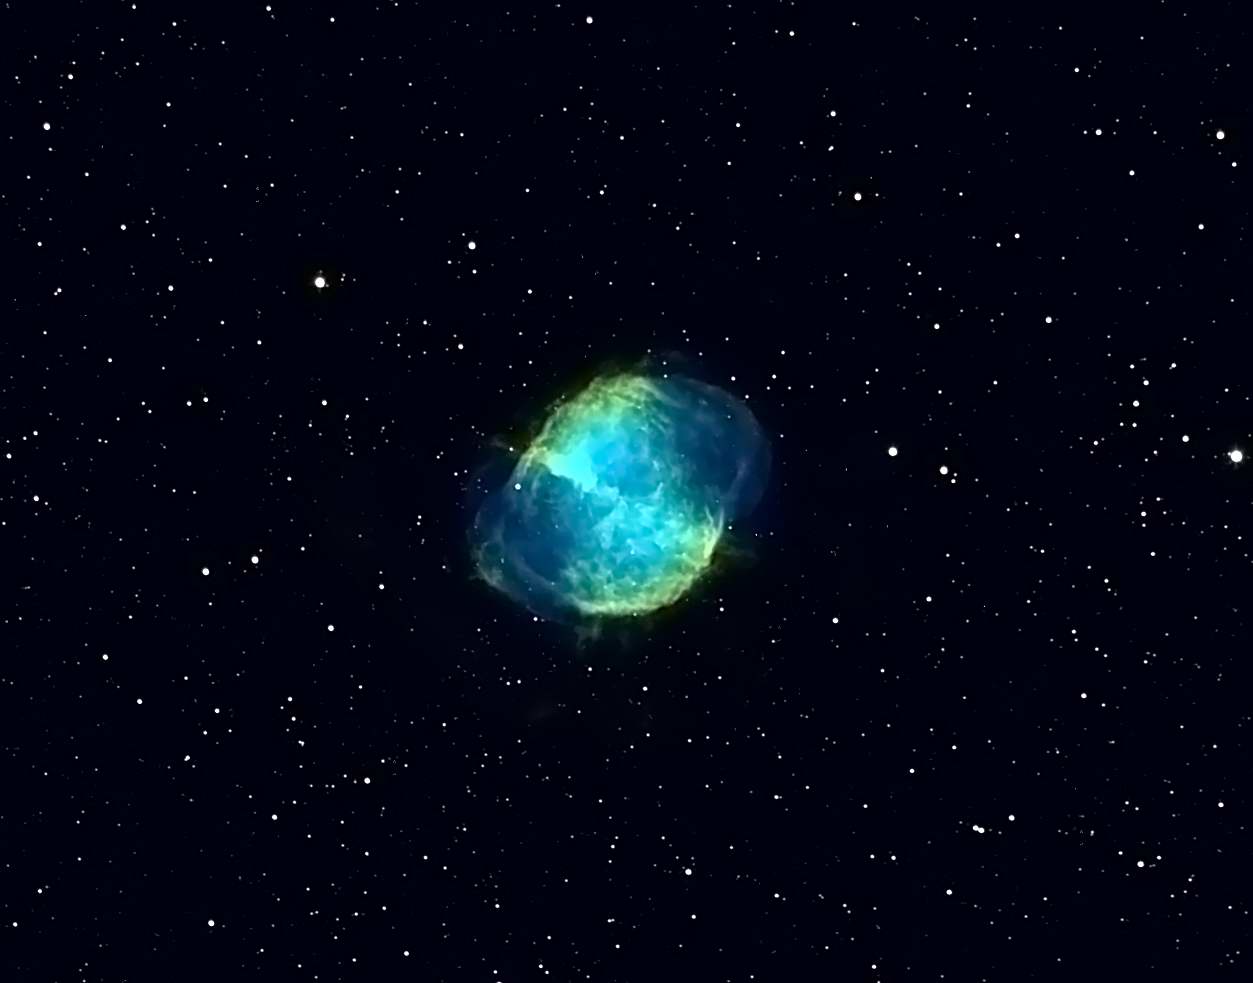 M27 - Dumbbell Nebula 